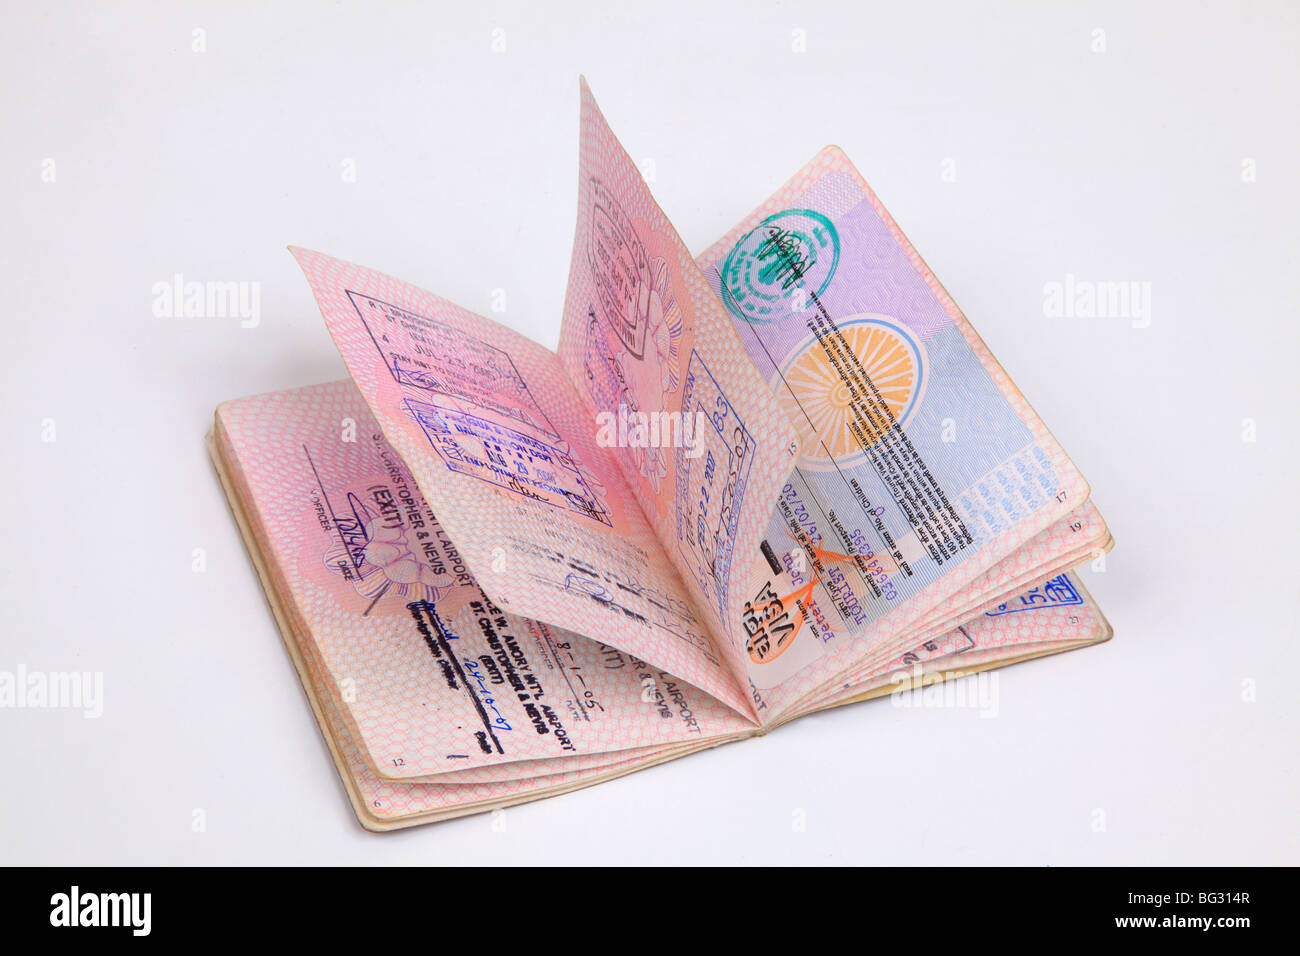 Britischen Reisepass Seiten mit Ziel Briefmarken aus verschiedenen Ländern. Stockfoto